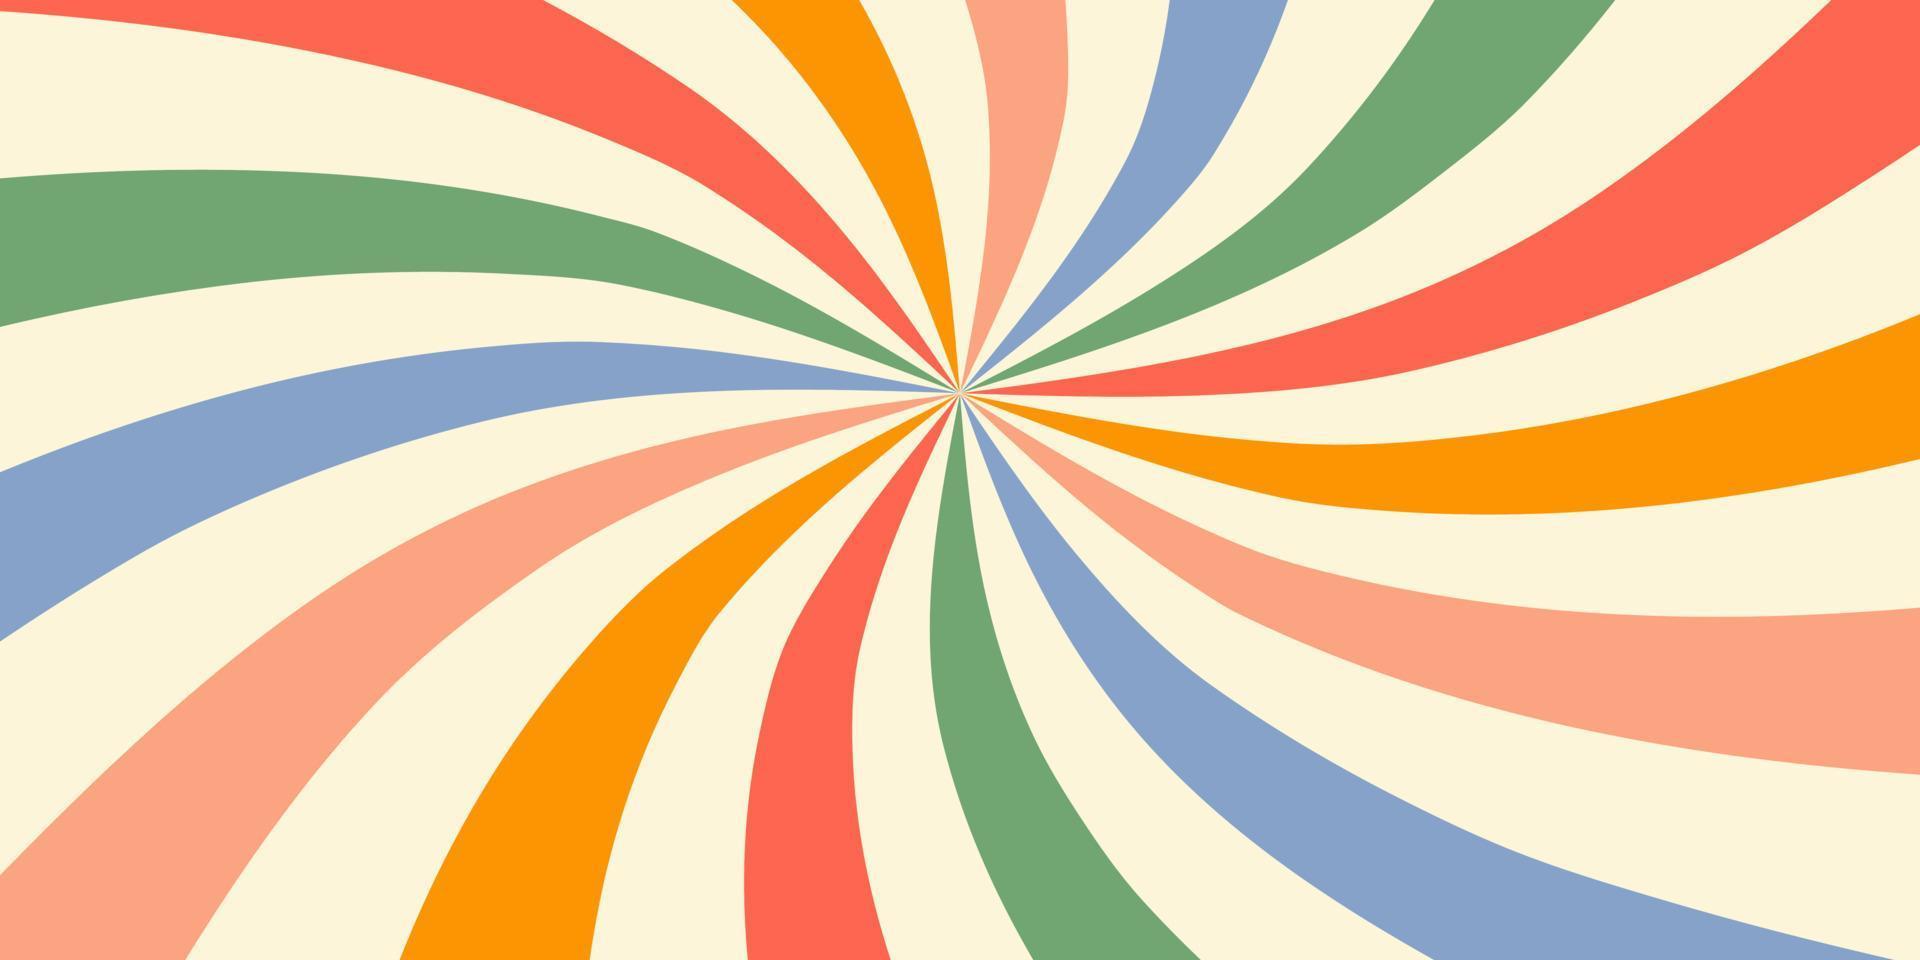 arrière-plan horizontal rétro avec sunburst dans un motif à rayures radiales en spirale ou tourbillonnantes. couleurs bleu, jaune, rose et vert. illustration vectorielle à la mode dans le style des années 70, 80 vecteur